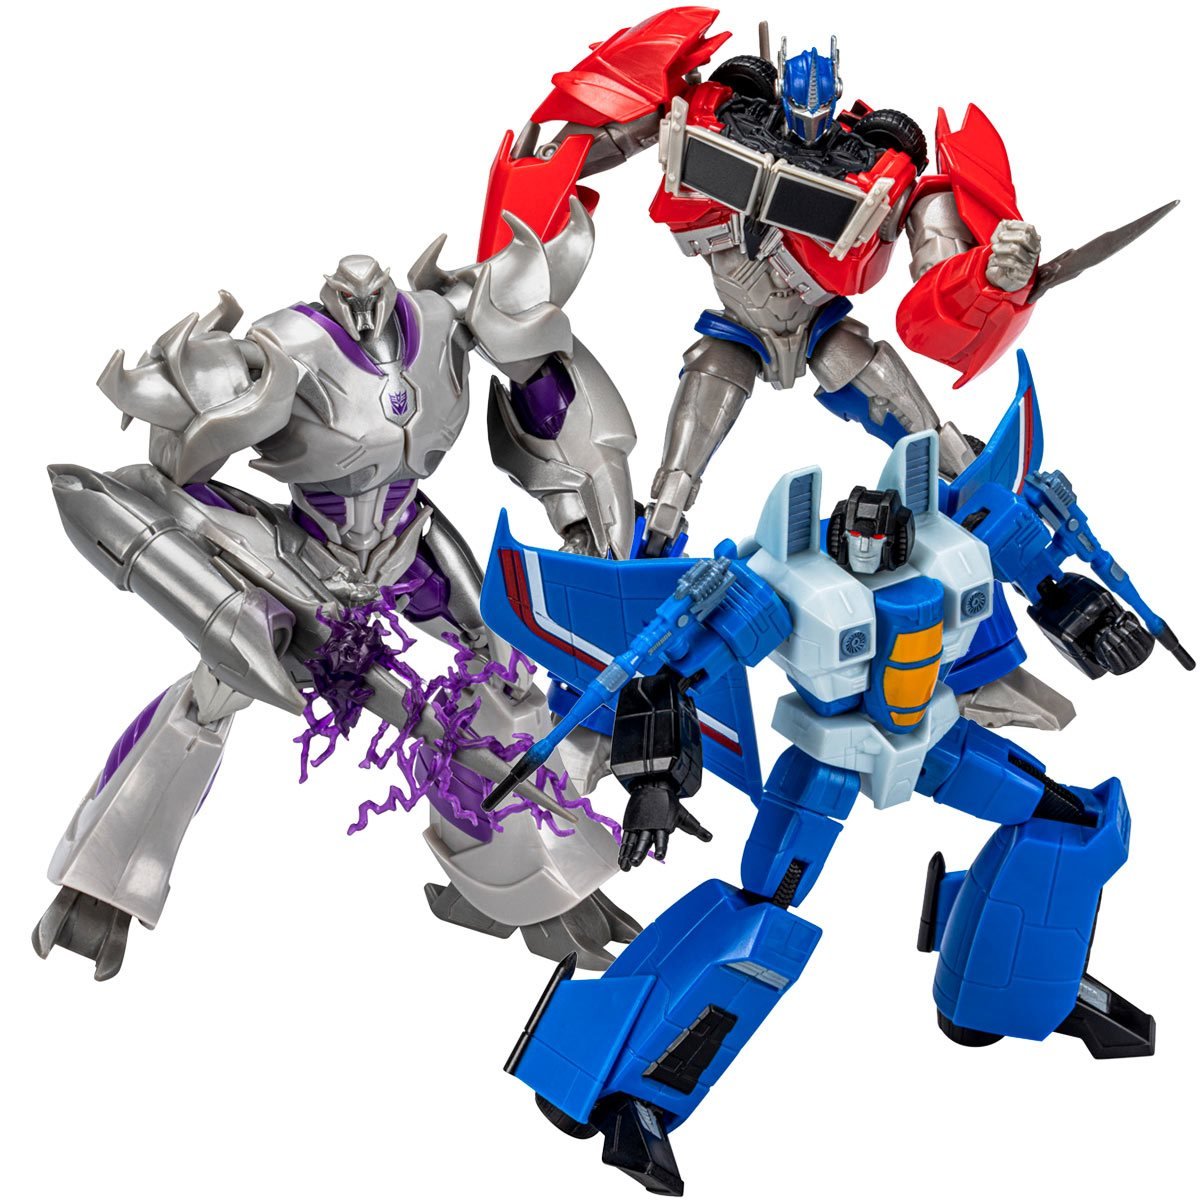 Transformers RED Prime Megatron & Optimus Prime, G1 Thundercracker